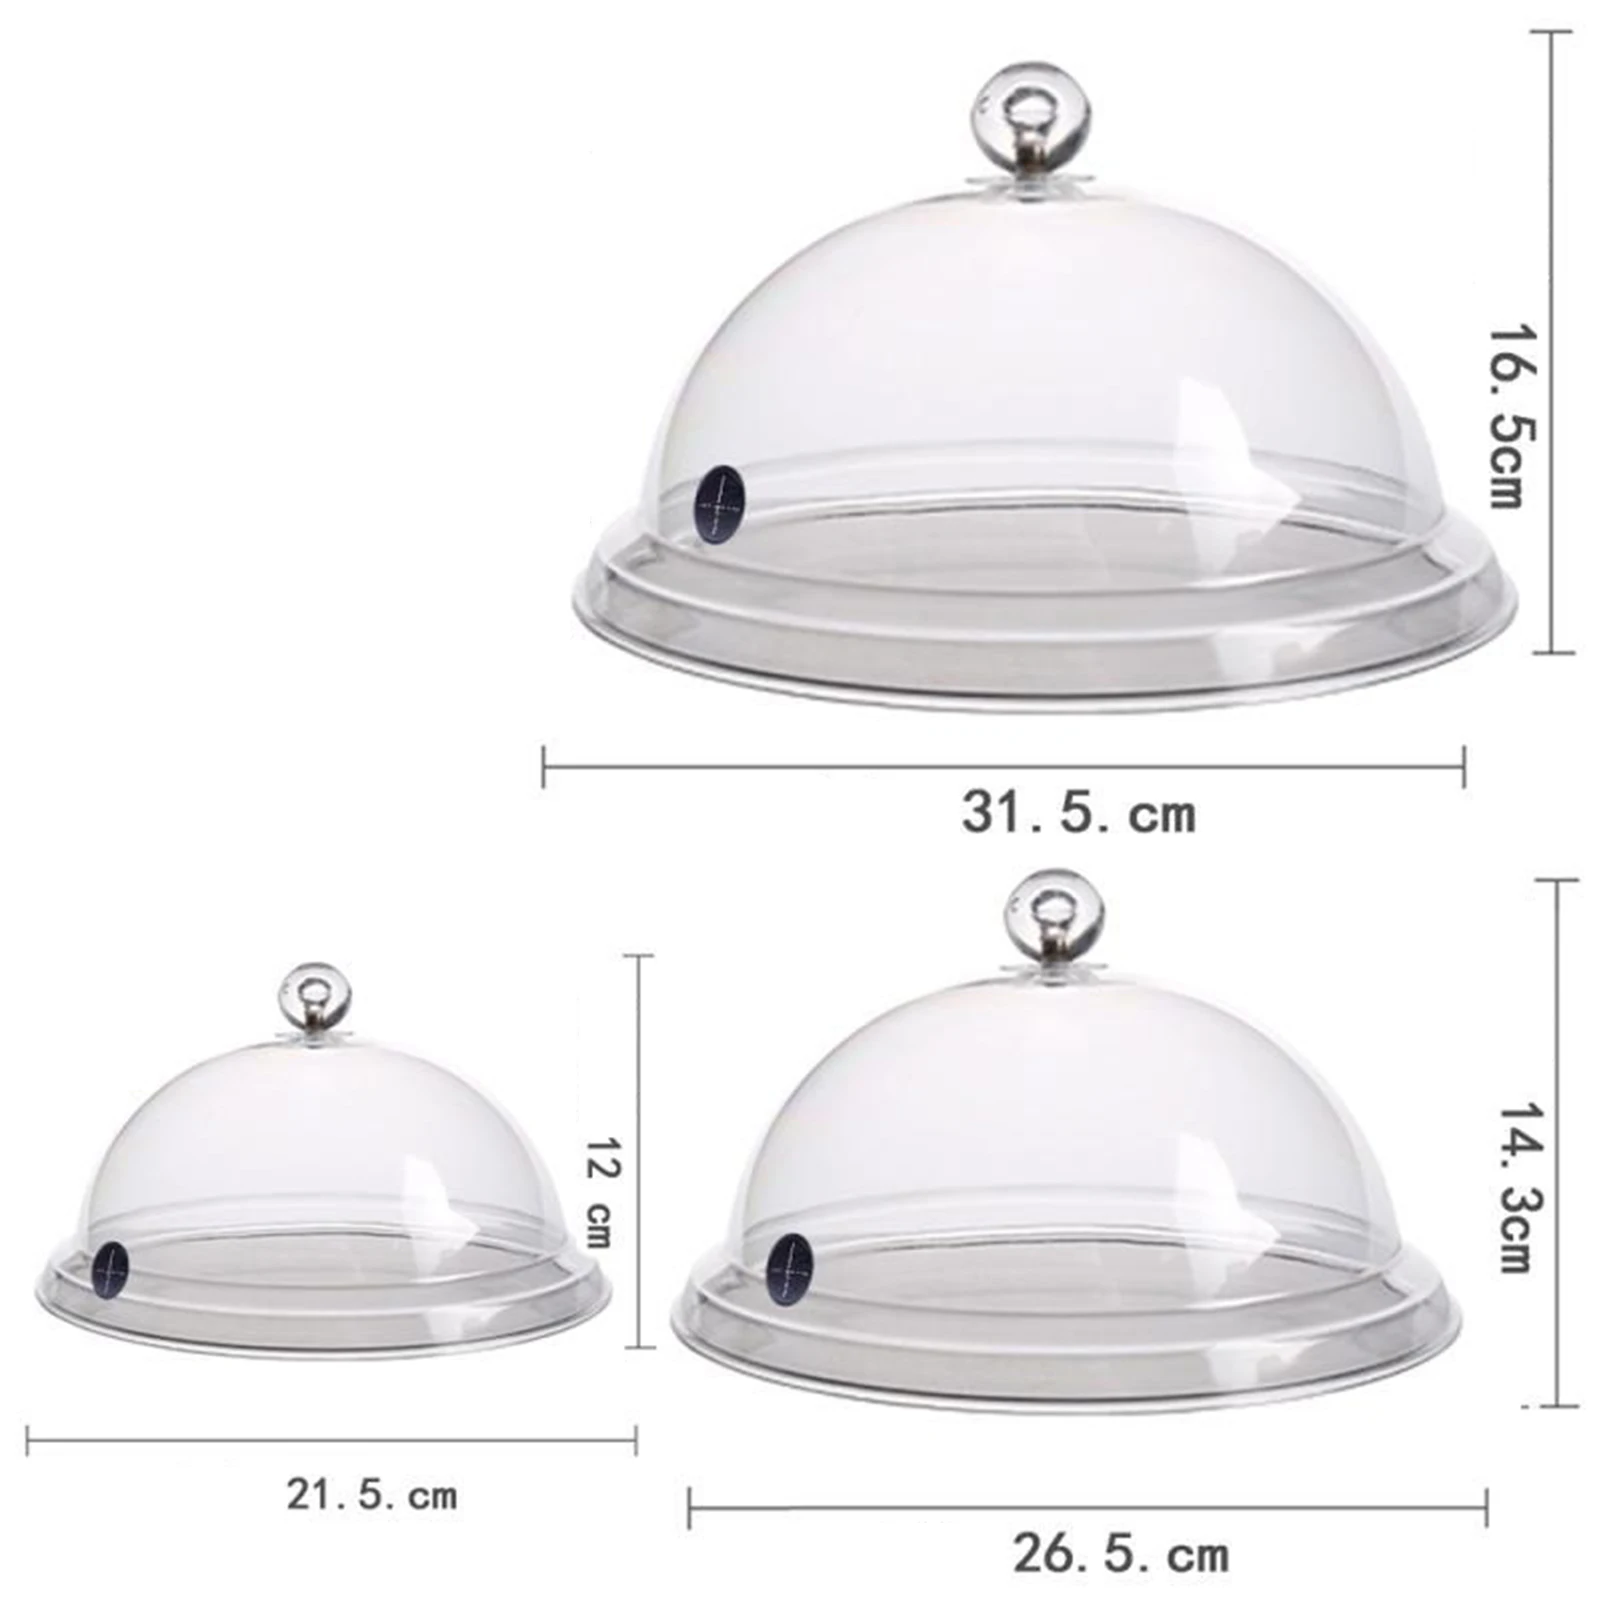 Laimeng Plastic Pentru Nefumători Infuser Cloche Capac Capac Dome 8 10 12 Inch Bucătărie Accesoriu Pentru Fumător Arma Farfurii Boluri